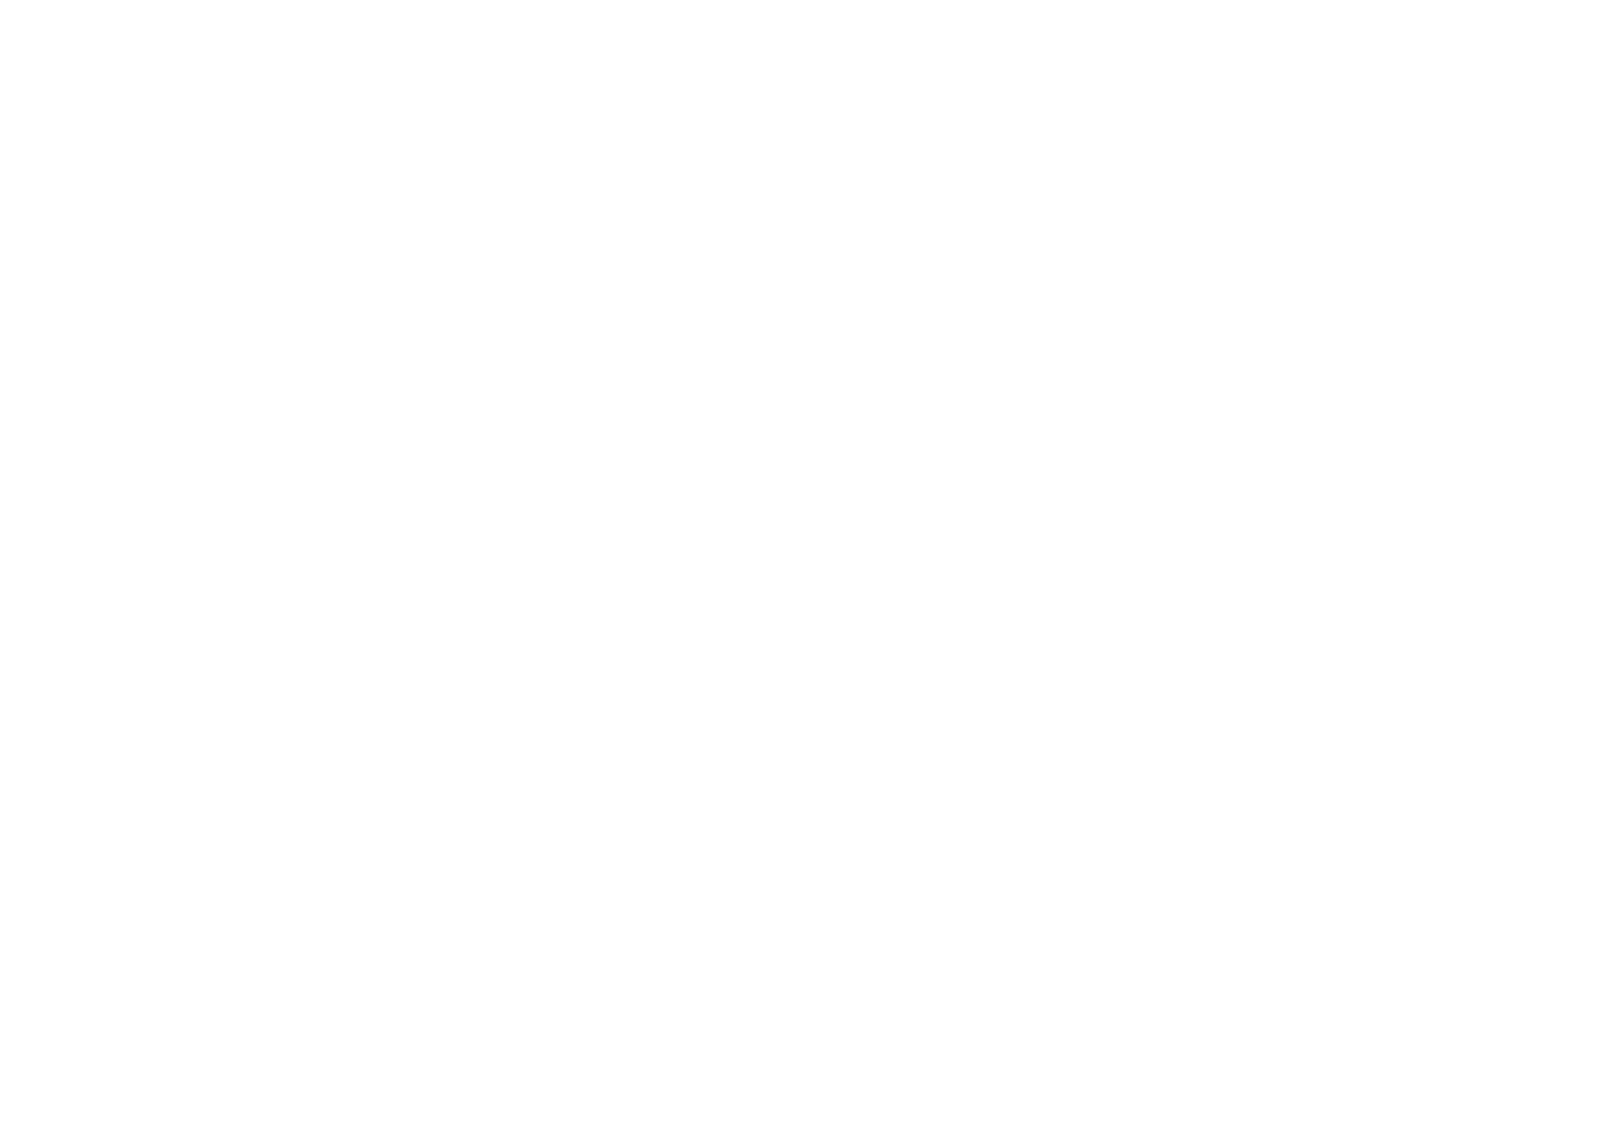 加藤ミリヤ、⻘山テルマらが出演！「佐野市復興チャリティーコンサート SANO FES 2020」第4弾出演アーティスト発表サムネイル画像!